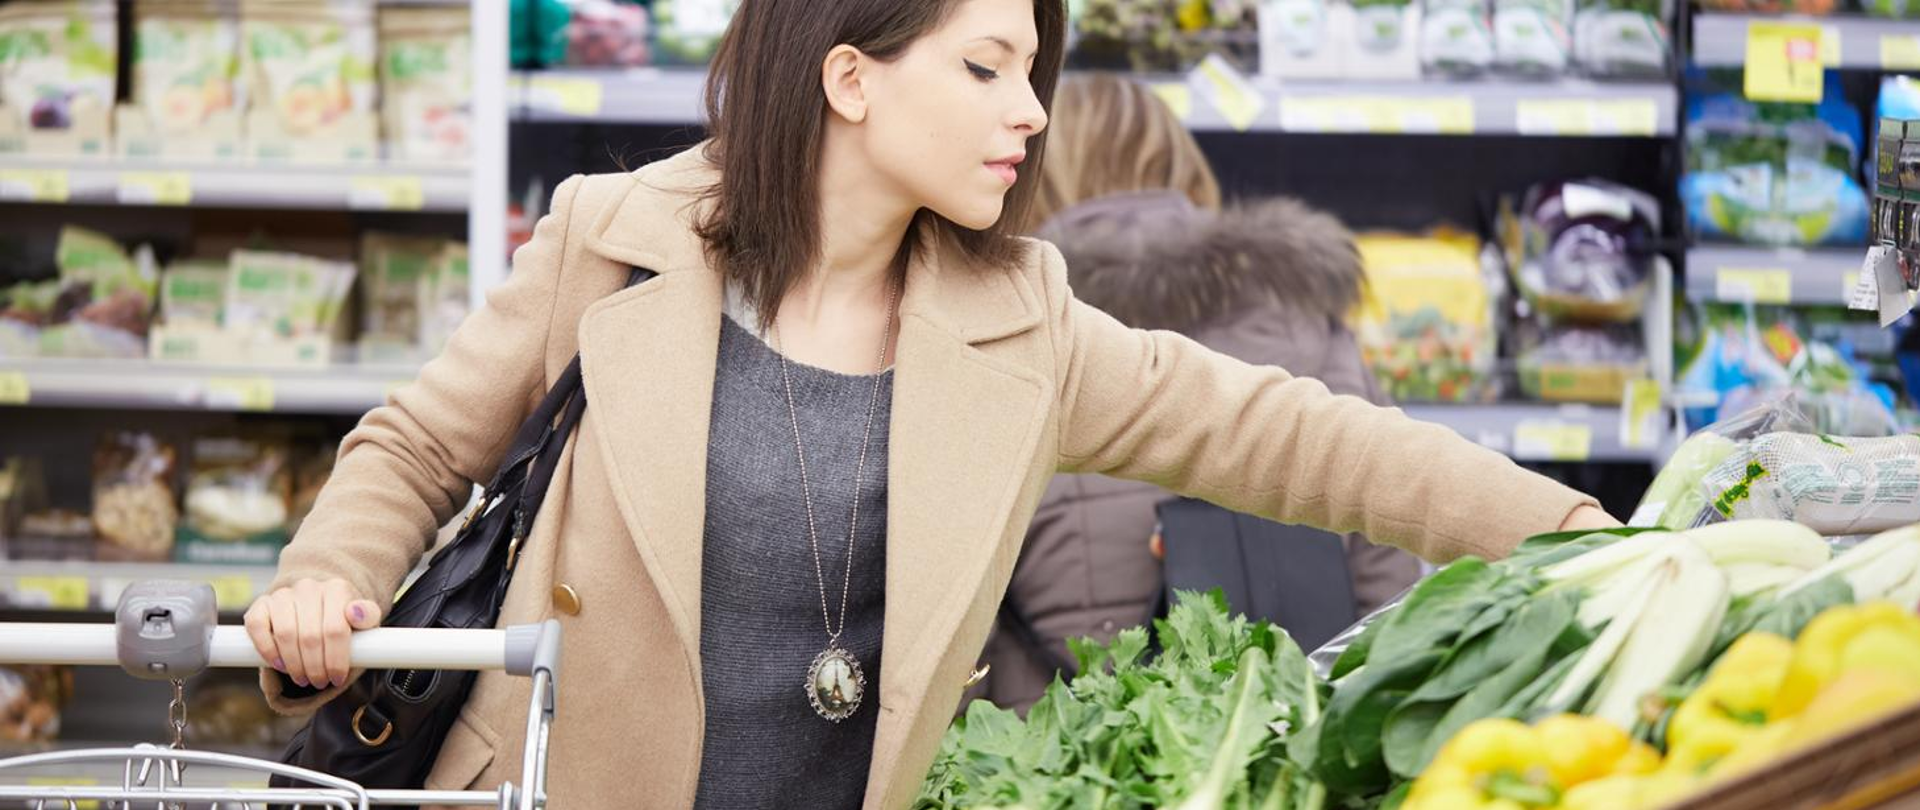 na pierwszym planie kobieta trzymająca rękę na poręczy wózka sklepowego, druga ręka sięga po warzywa. W tle półki sklepowe z produktami.